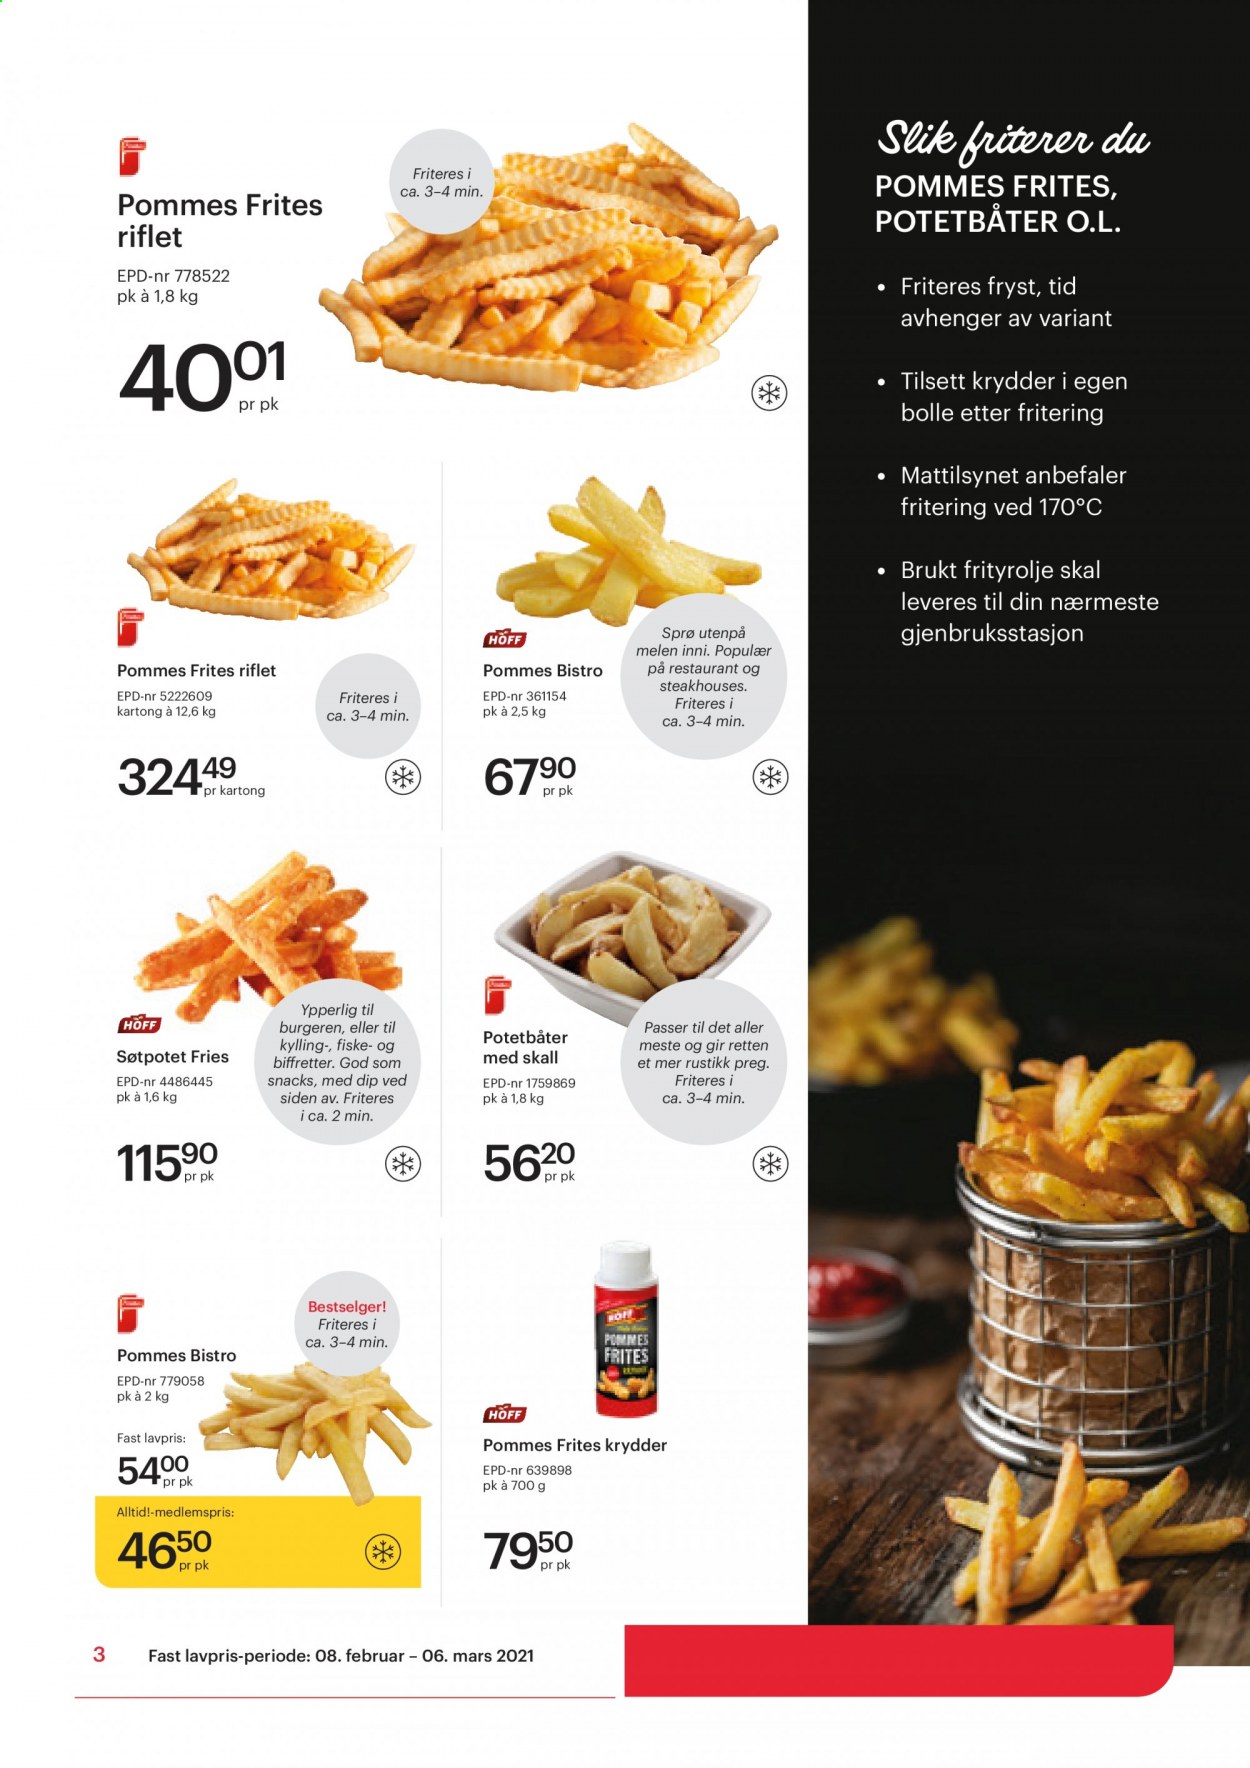 thumbnail - Kundeavis Storcash - 8.2.2021 - 6.3.2021 - Produkter fra tilbudsaviser - pommes frites, frityrolje. Side 3.